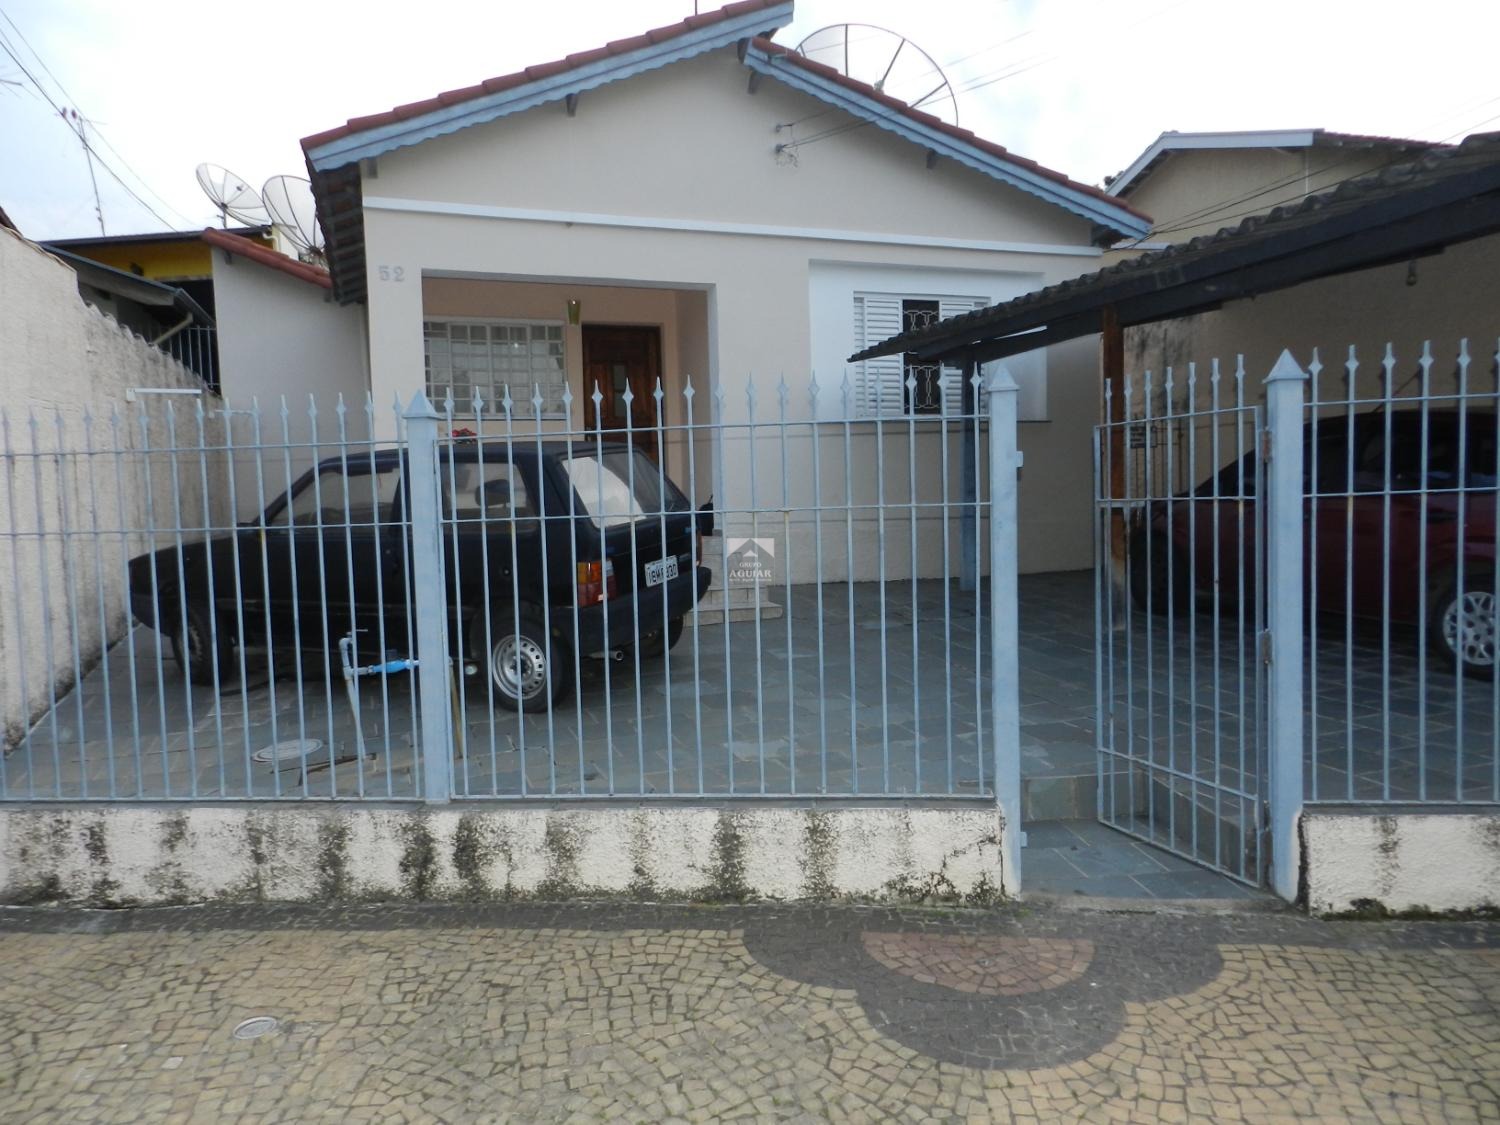 CA006386 | Casa venda Vila São Cristóvão | Valinhos/SP